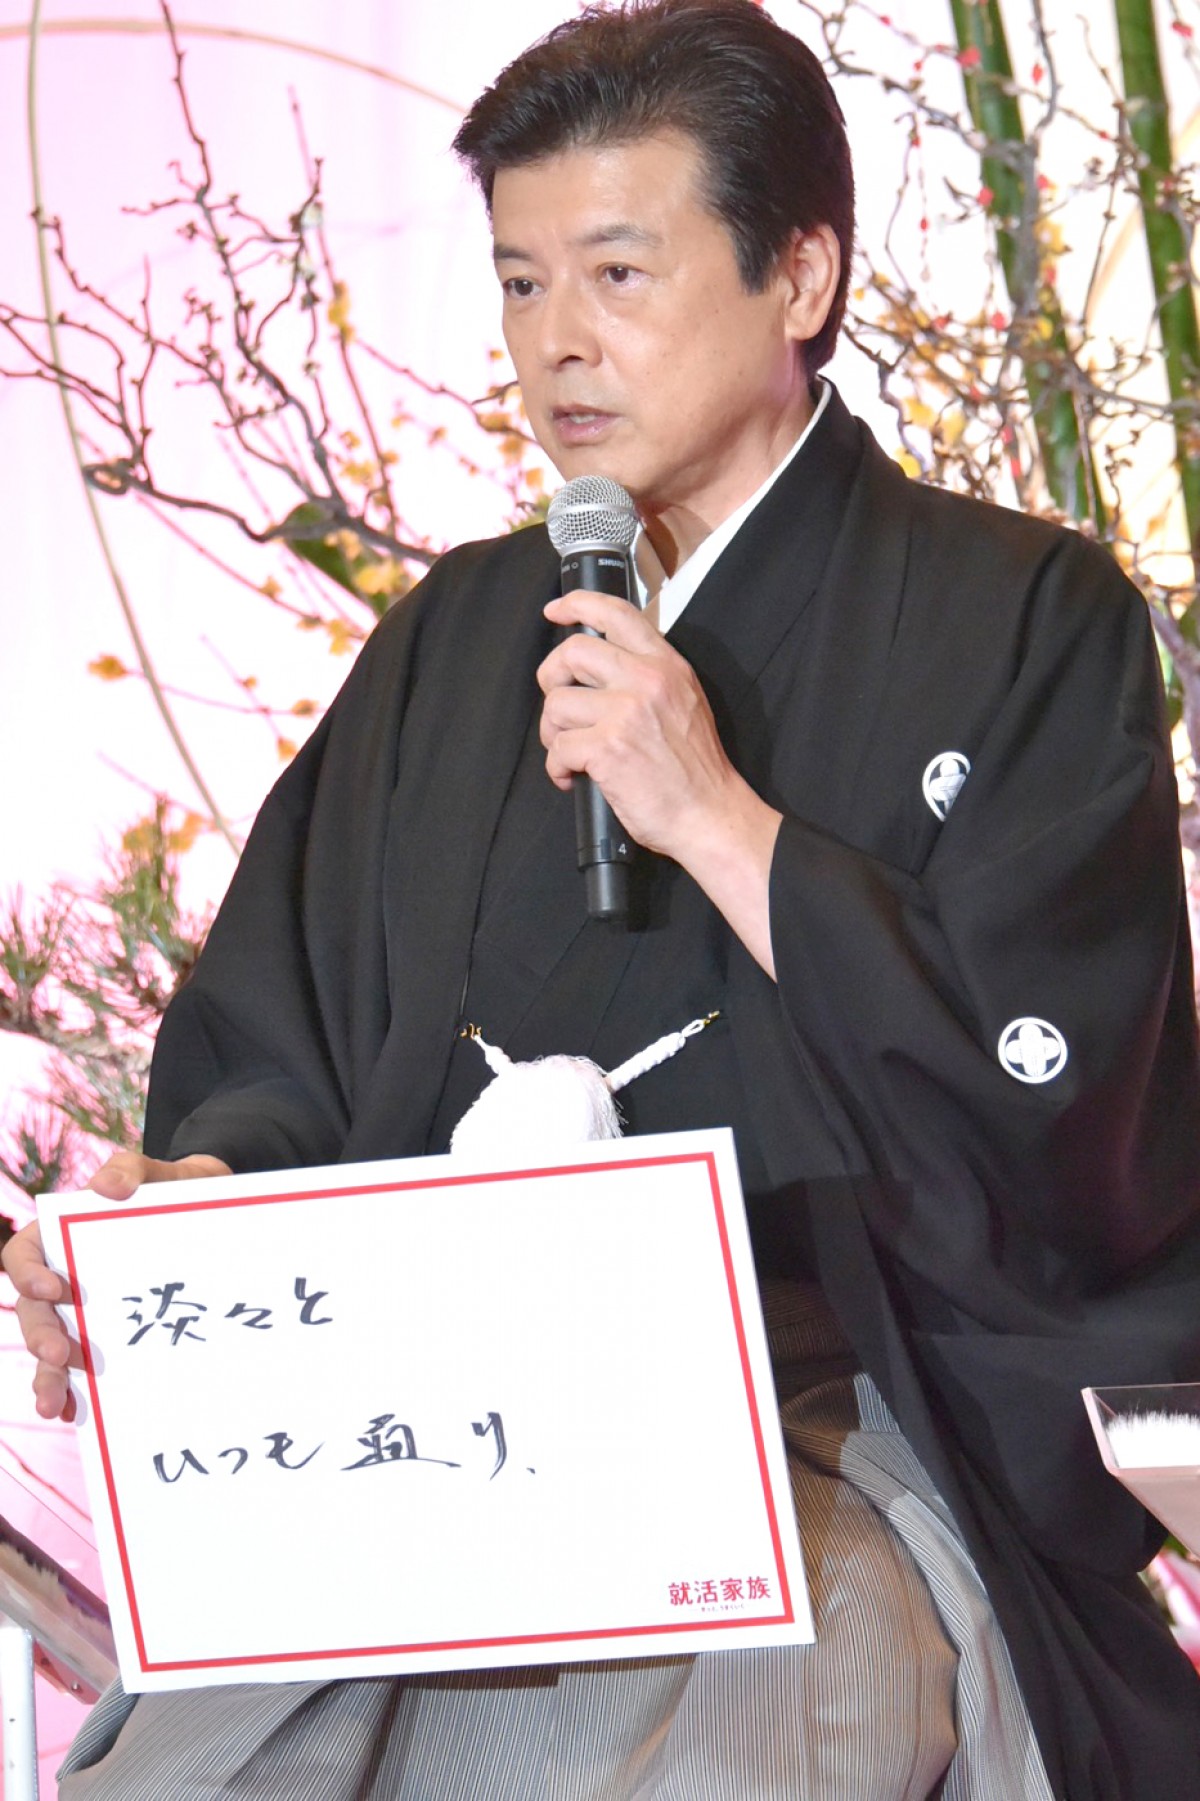 前田敦子、AKB時代の名言で出演ドラマをアピール「嫌いにならないでください」